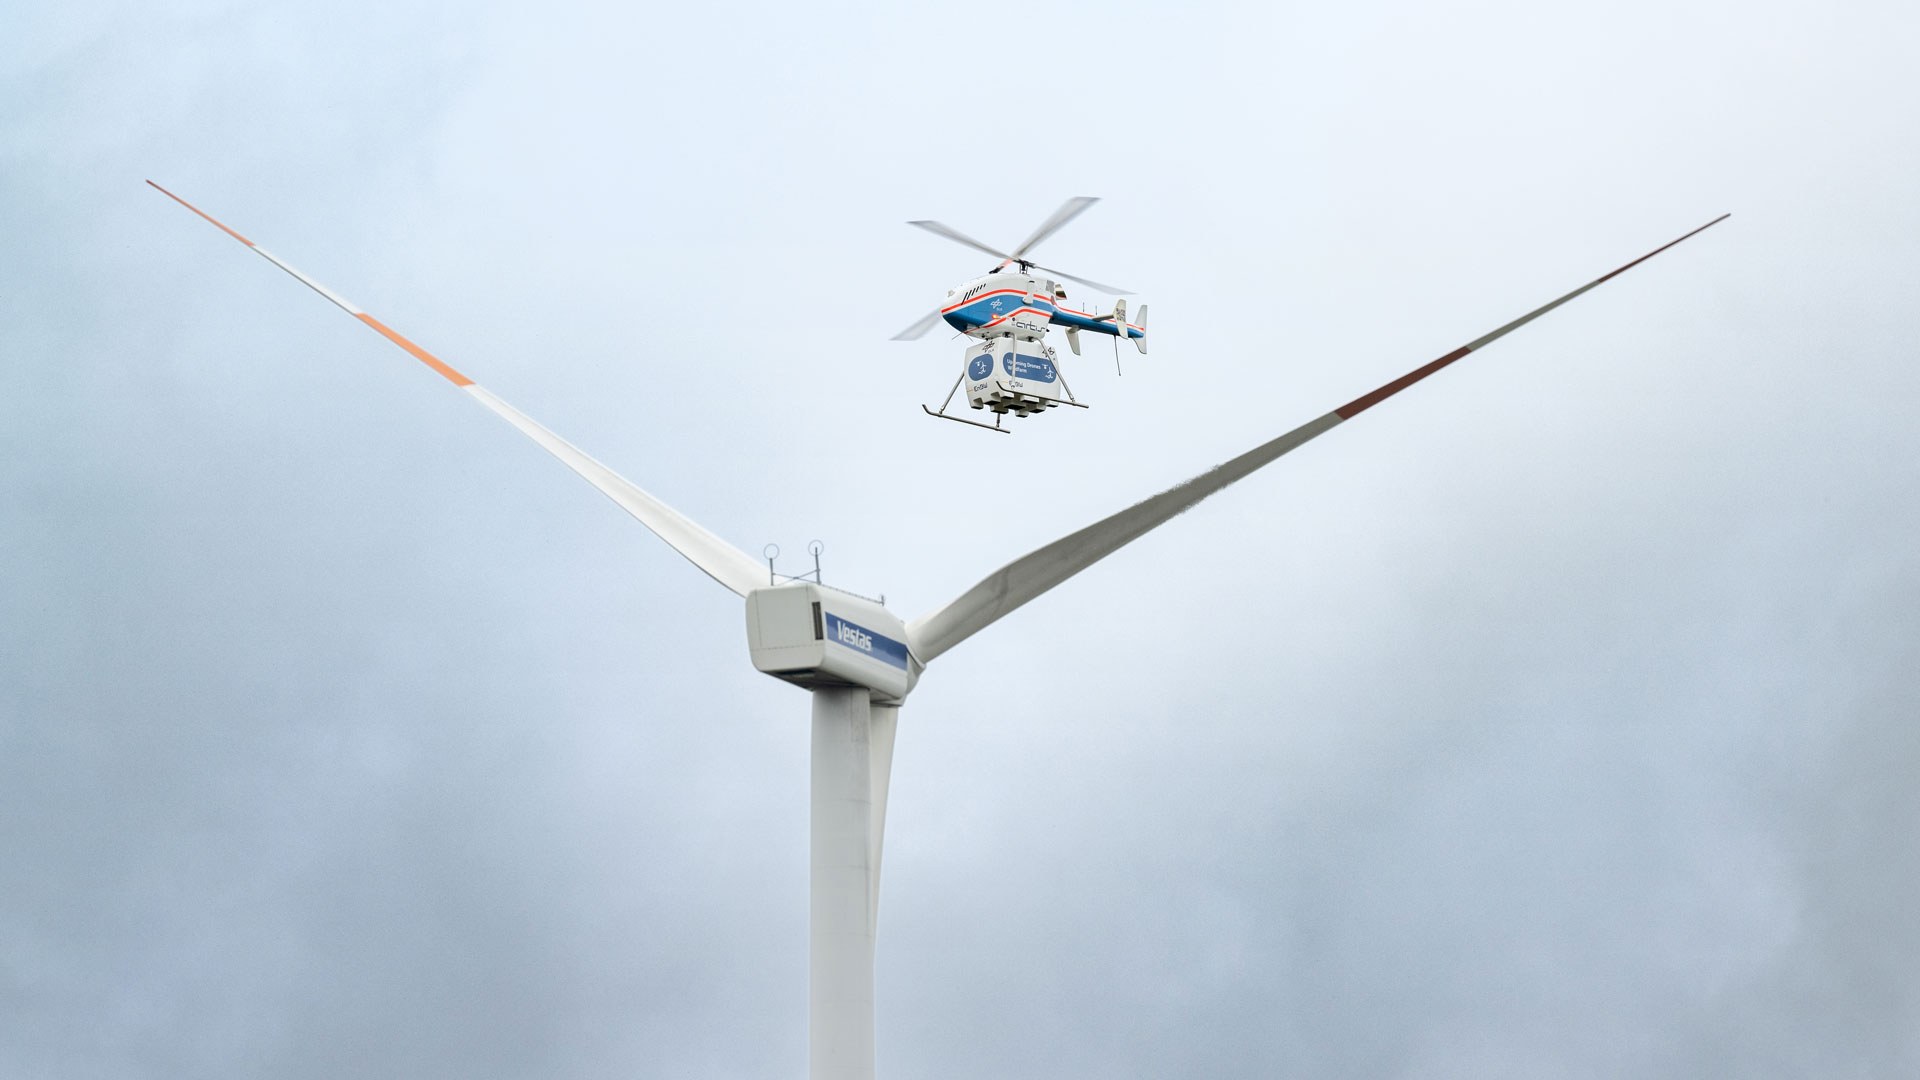 Der unbemannte DLR-Hubschrauber superARTIS nähert sich einer Windenergieanlage. Im Projekt „Upcoming Drones Windfarm“ geht es um die Frage, ob Drohnen für Offshore-Windparks Transportaufgaben übernehmen und Wartungspersonal entlasten können.